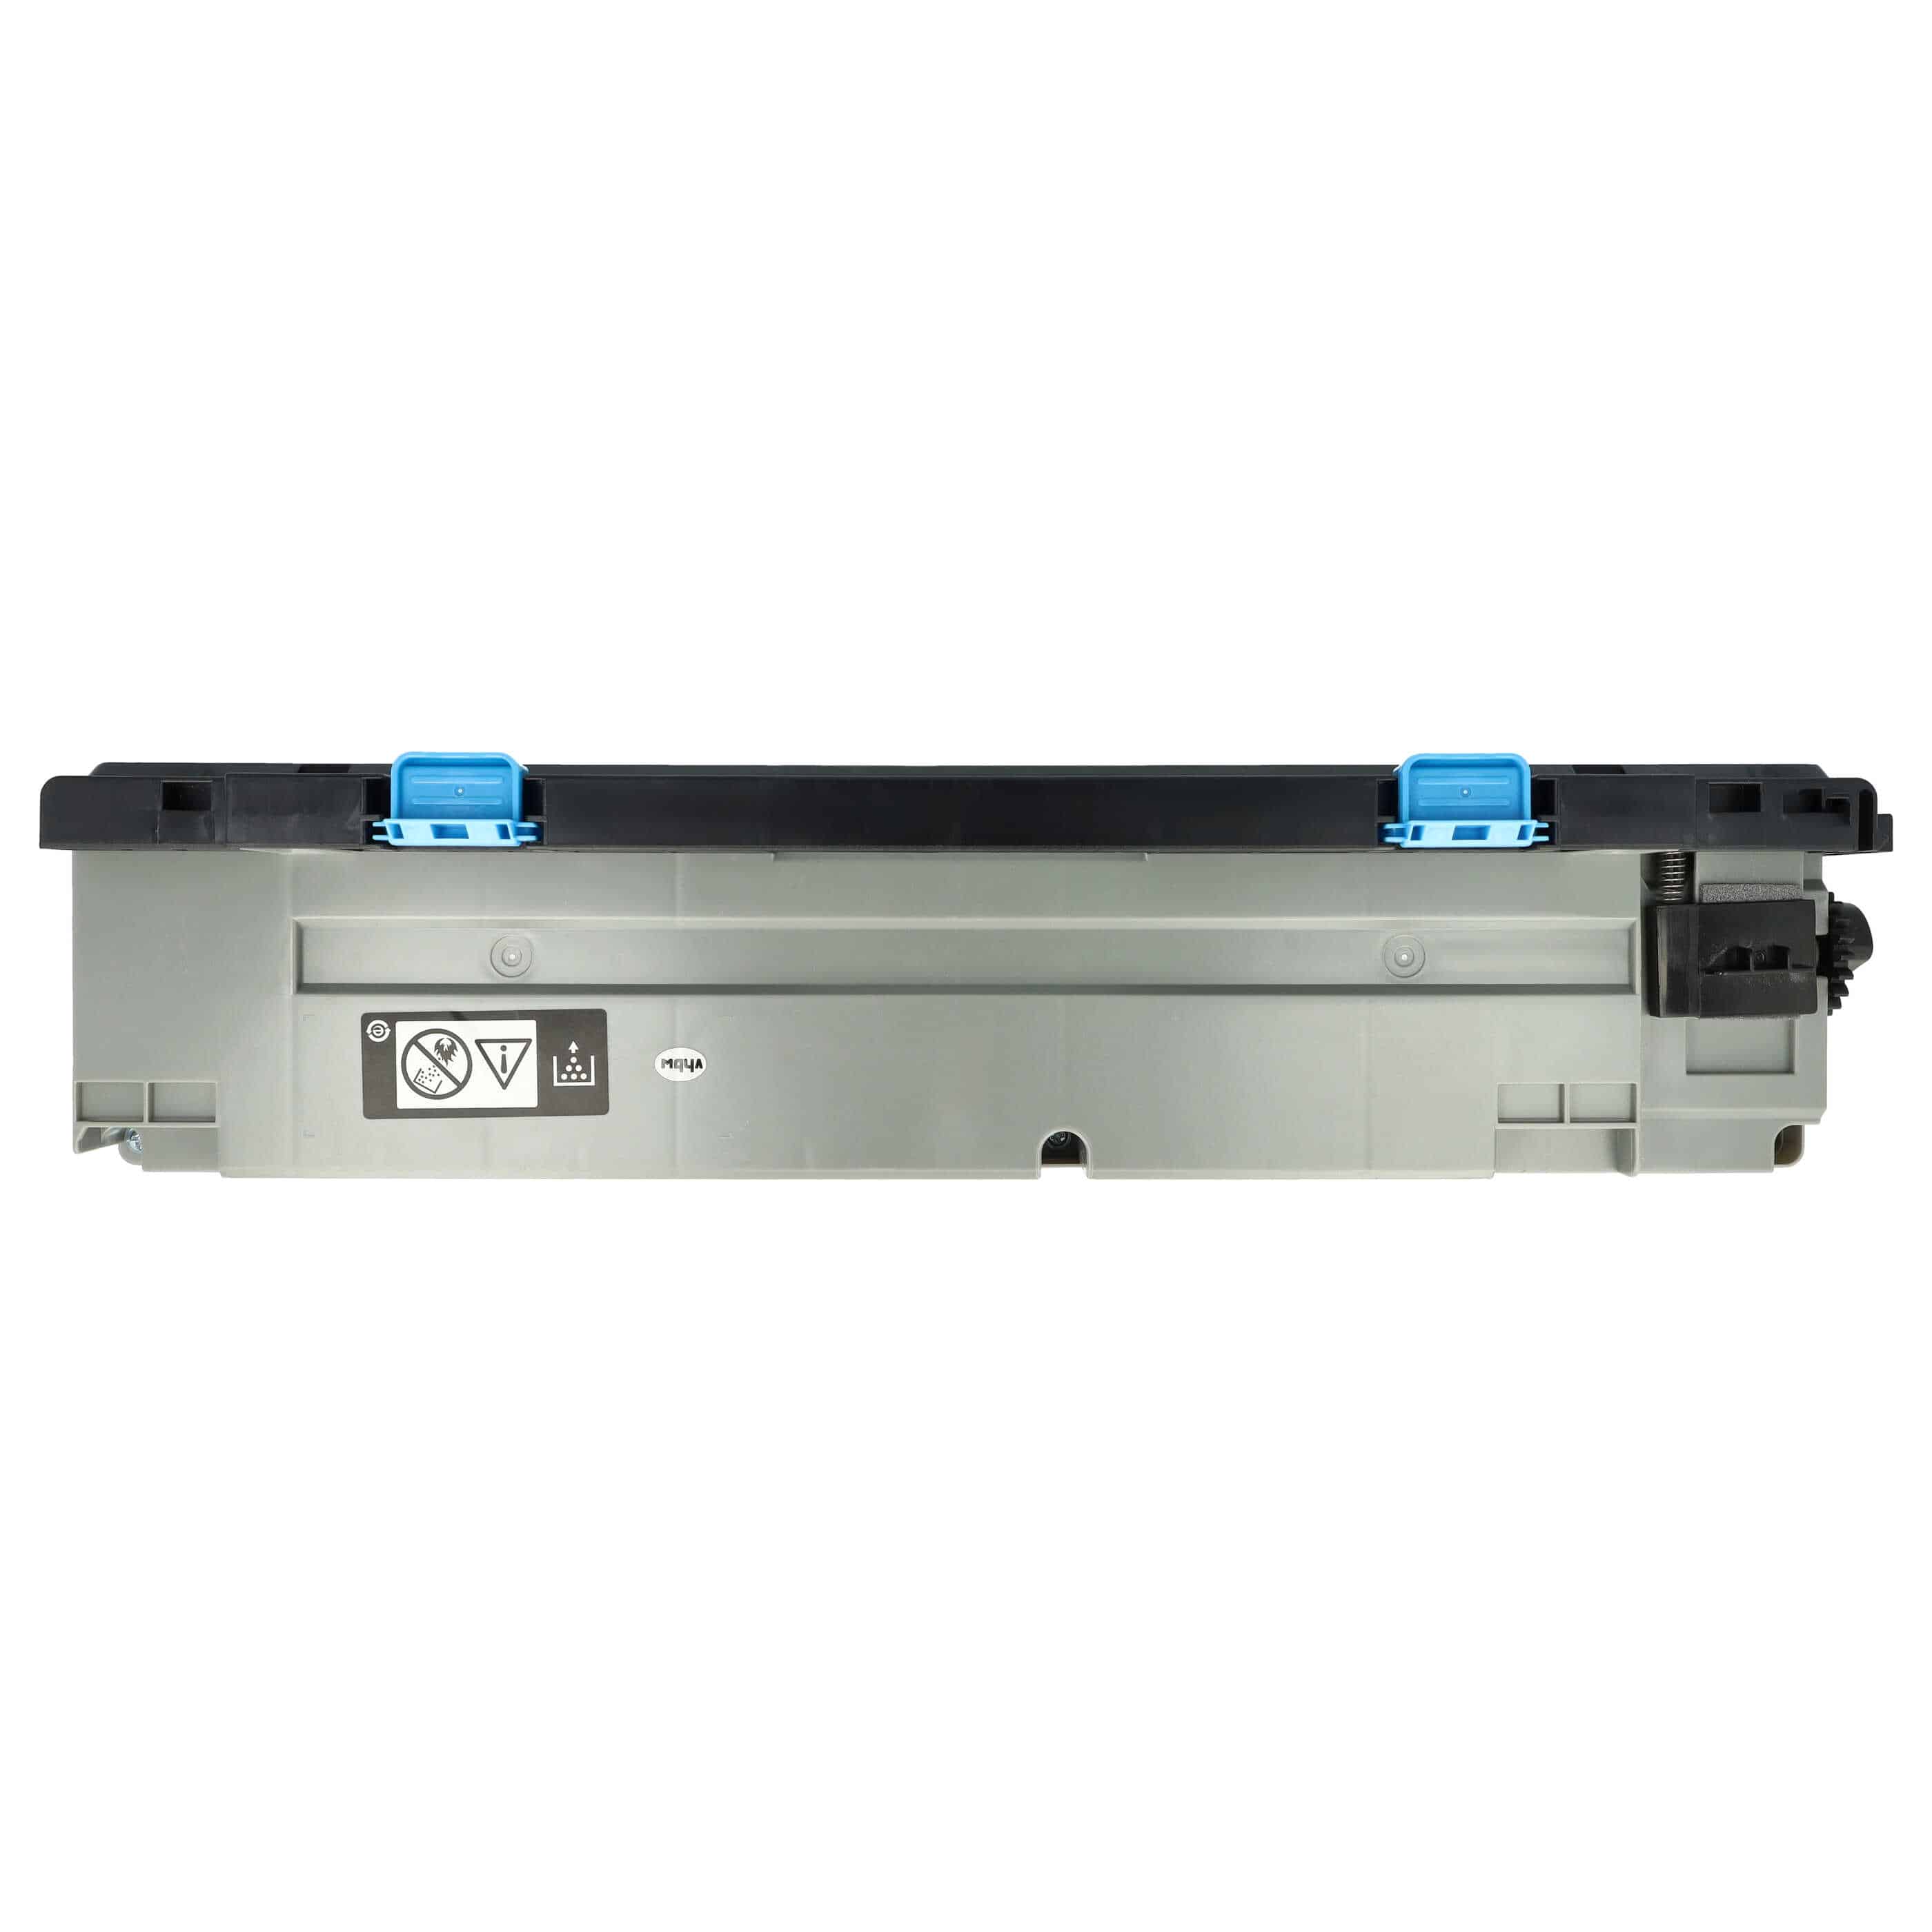 Collecteur de toner remplace Konica Minolta pour imprimante laser Olivetti D-Color 259 - gris